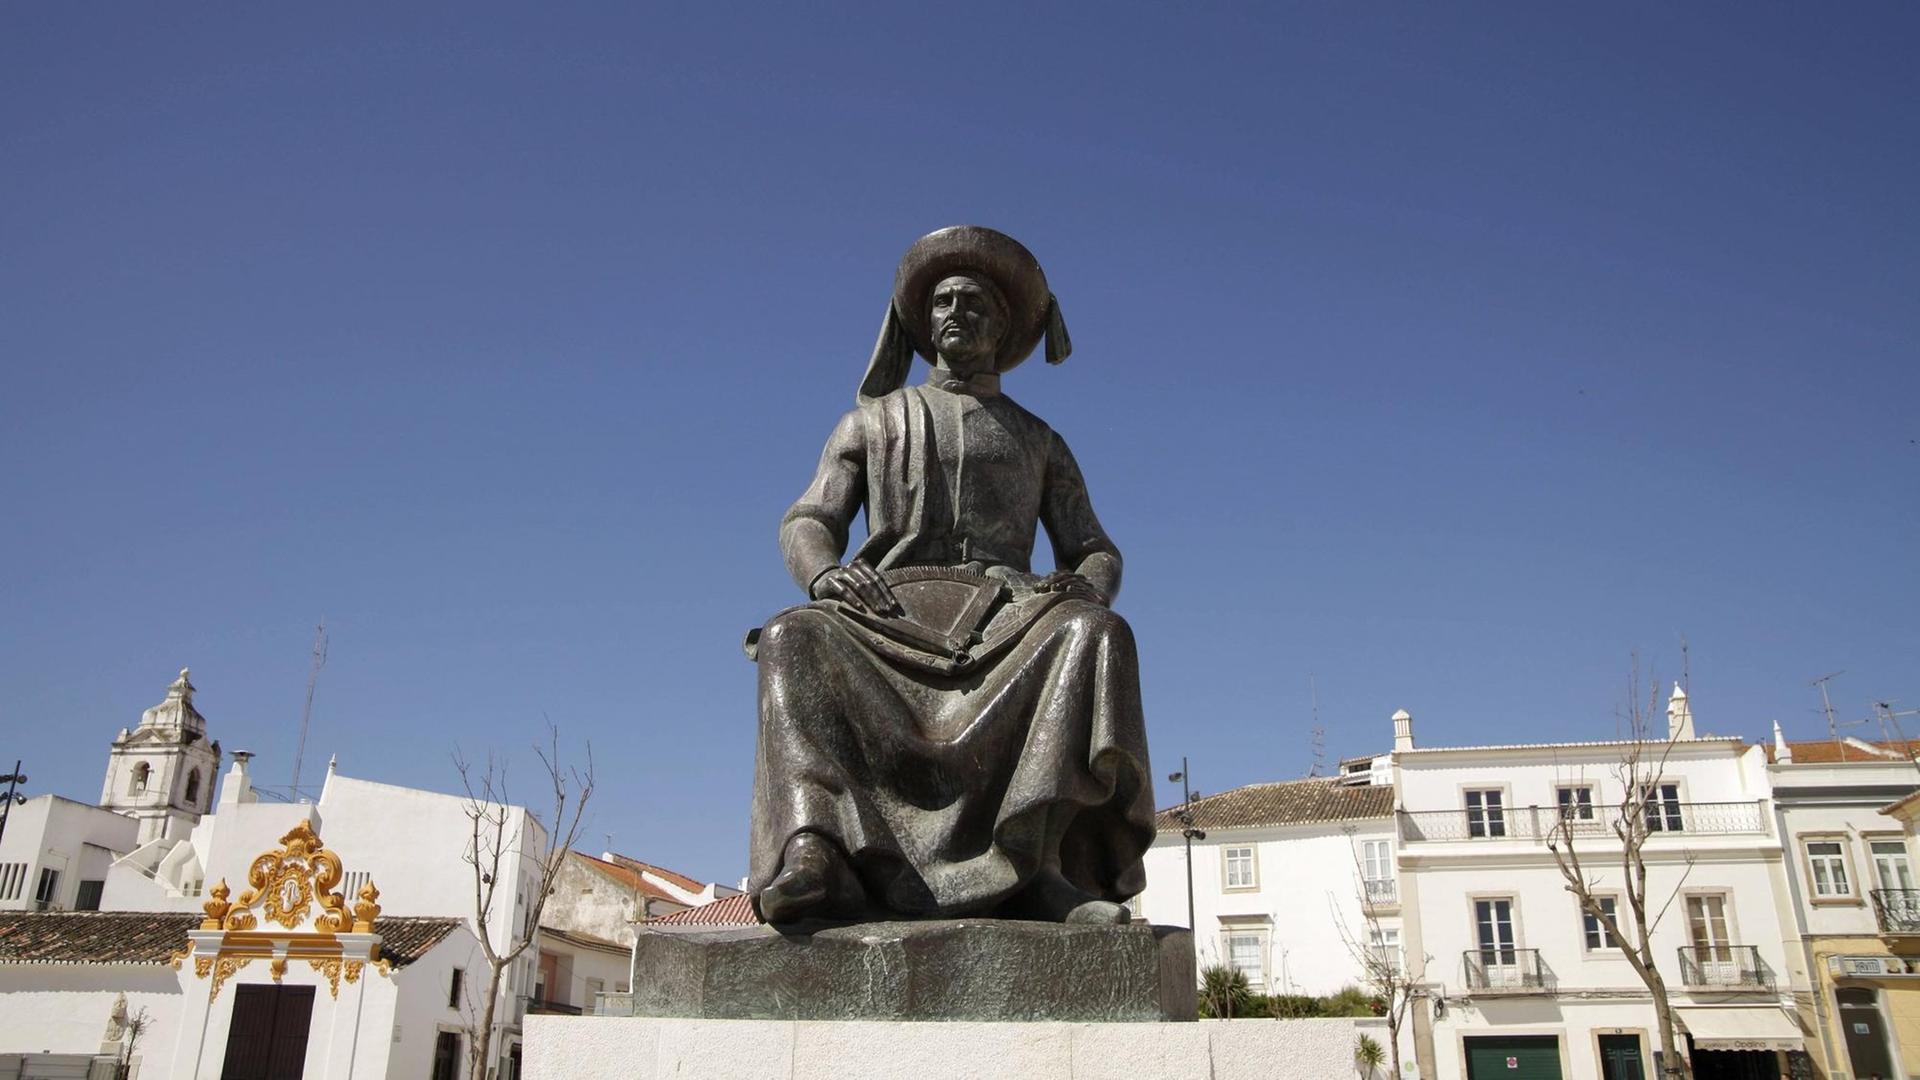 Denkmal für "Heinrich den Seefahrer", Infante D. Henrique in Lagos in Portugal